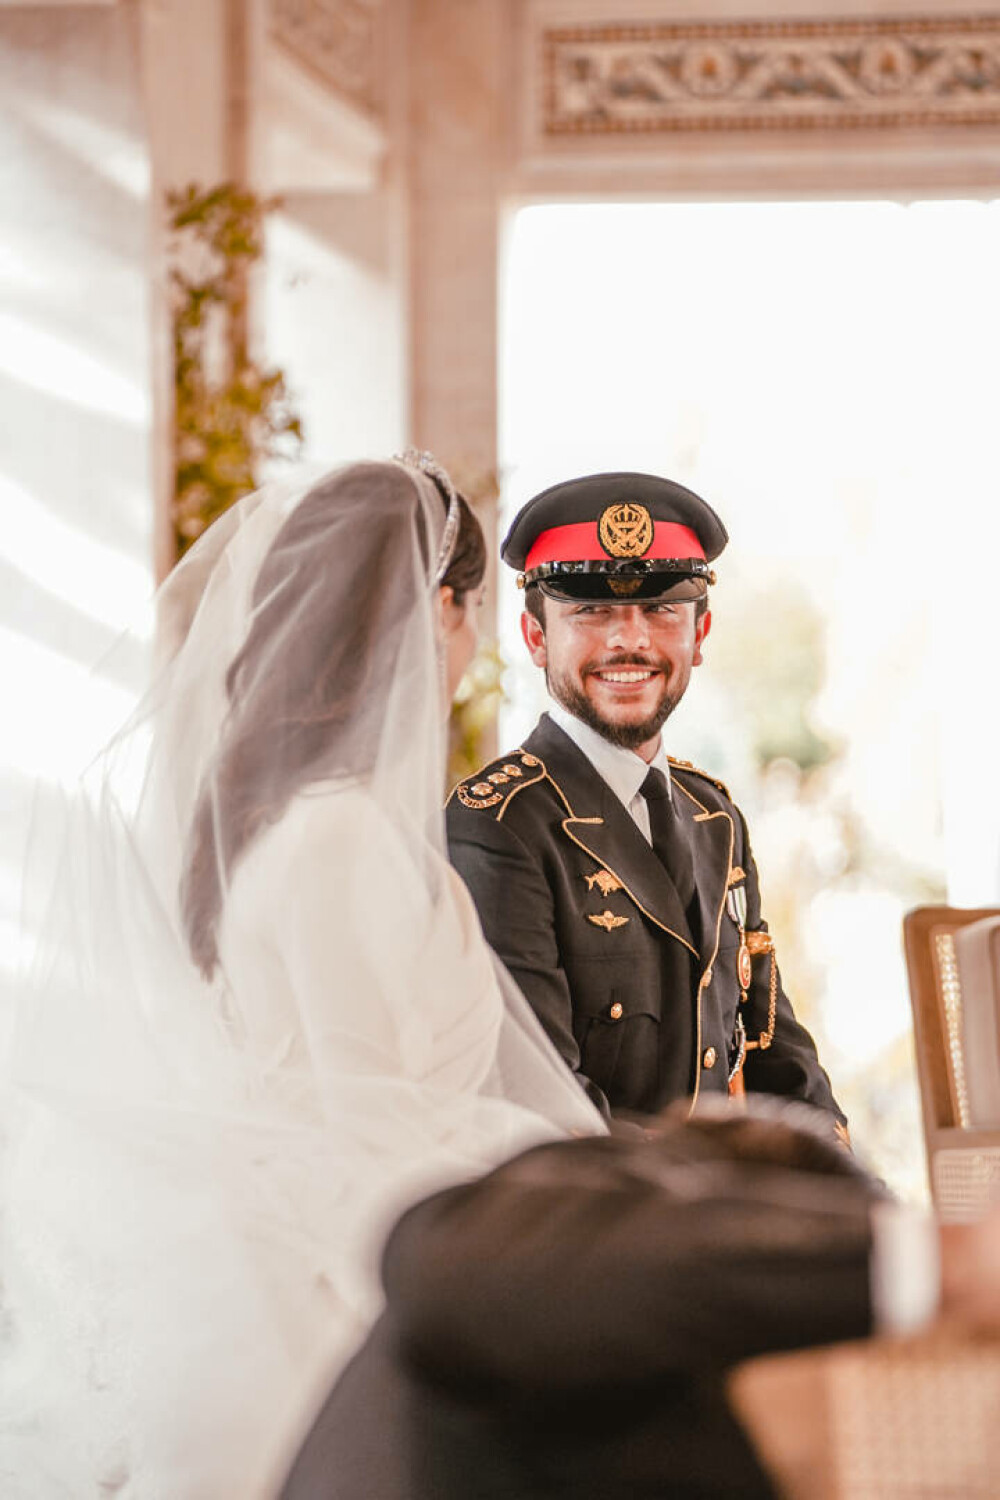 Peste 1.700 de invitați au participat la petrecerea de după nuntă a prinţului moştenitor al Iordaniei | GALERIE FOTO - Imaginea 24